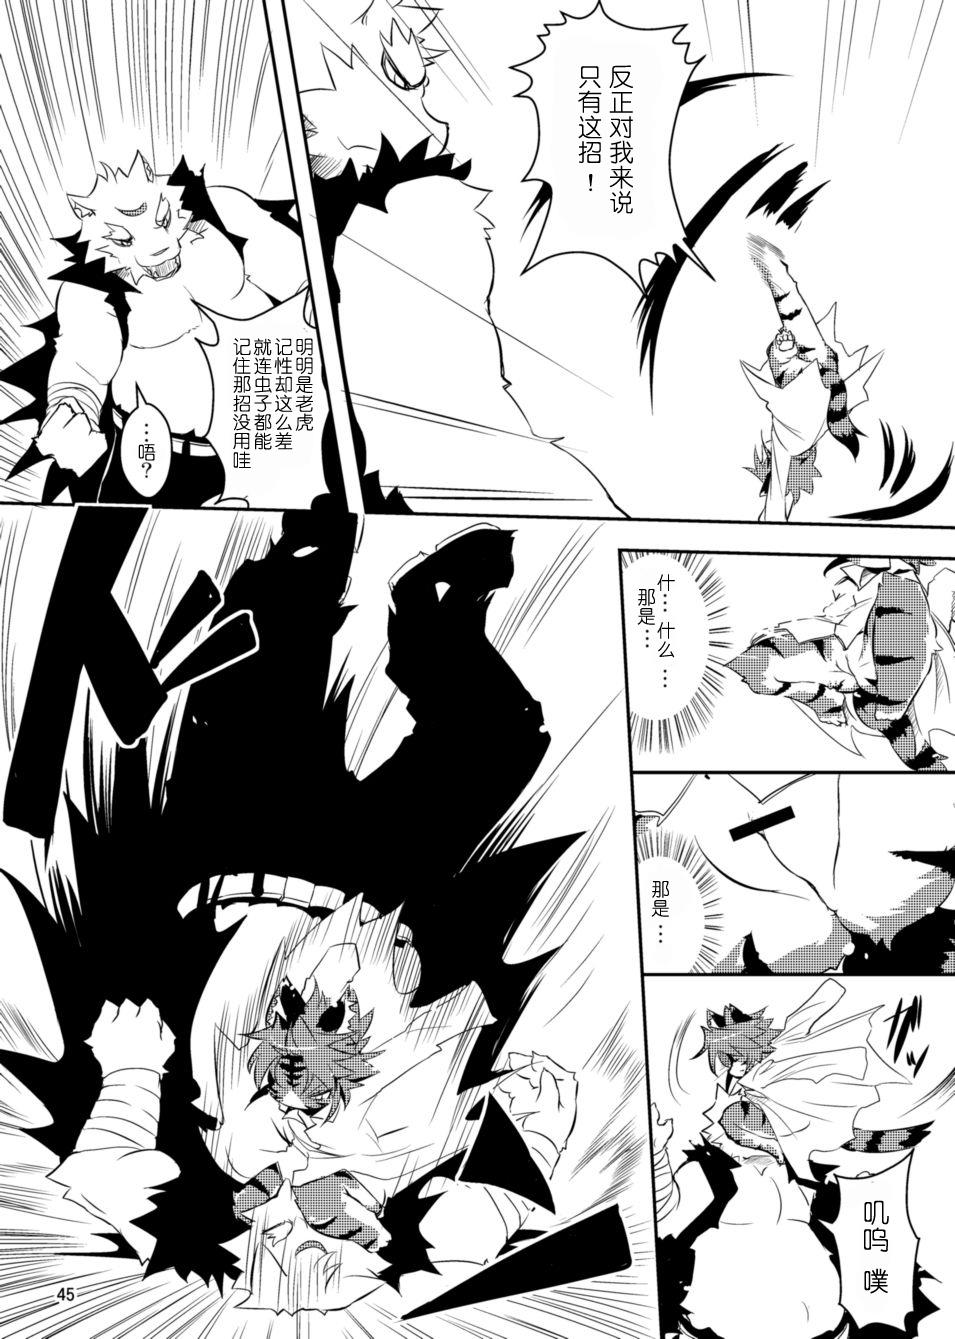 Paja Sakigake! Toraman Bancho-chan! Screaming - Page 27